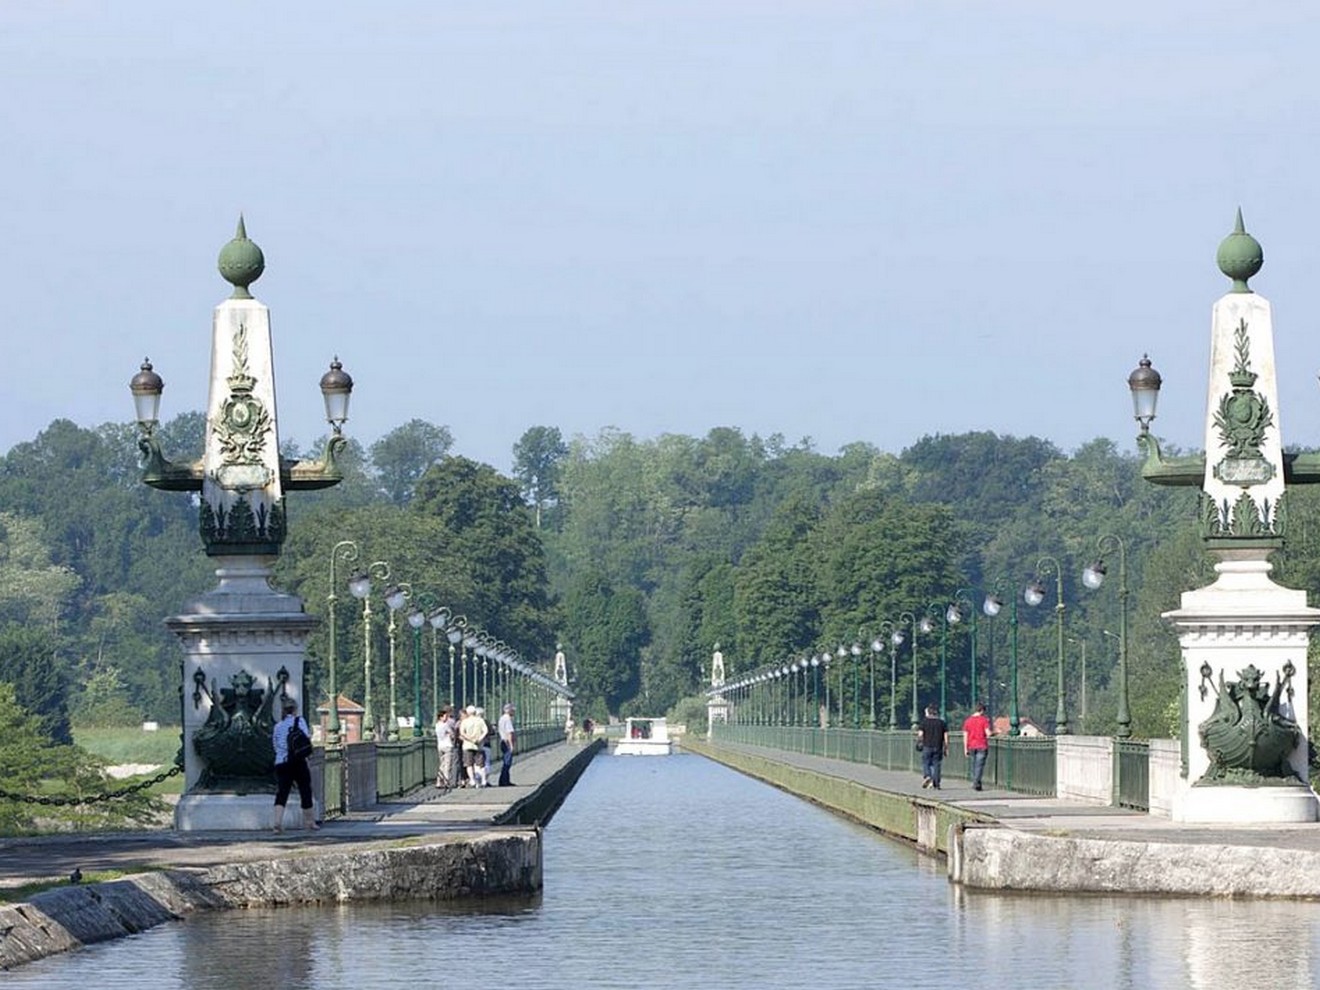 pont-canal-de-briare-christophe-lorsch-dr - My Loire Valley